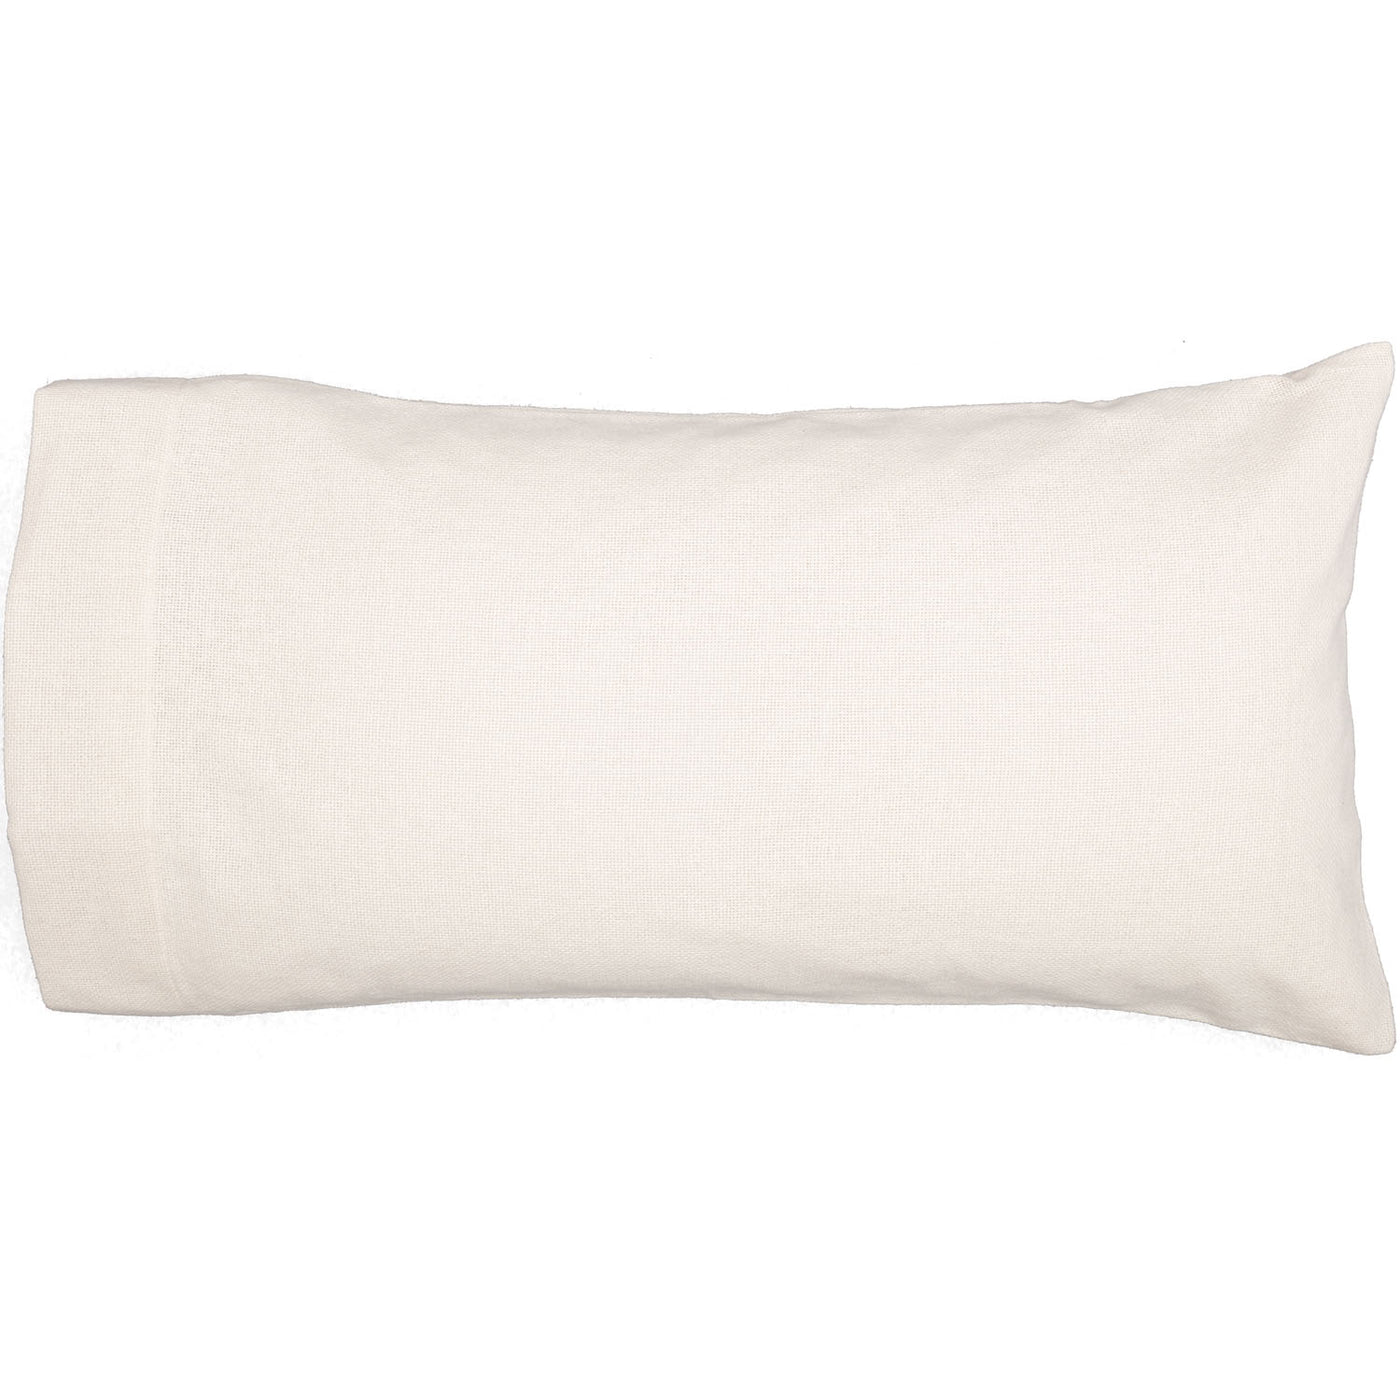 Athol King Pillow Case - White - Set of 2